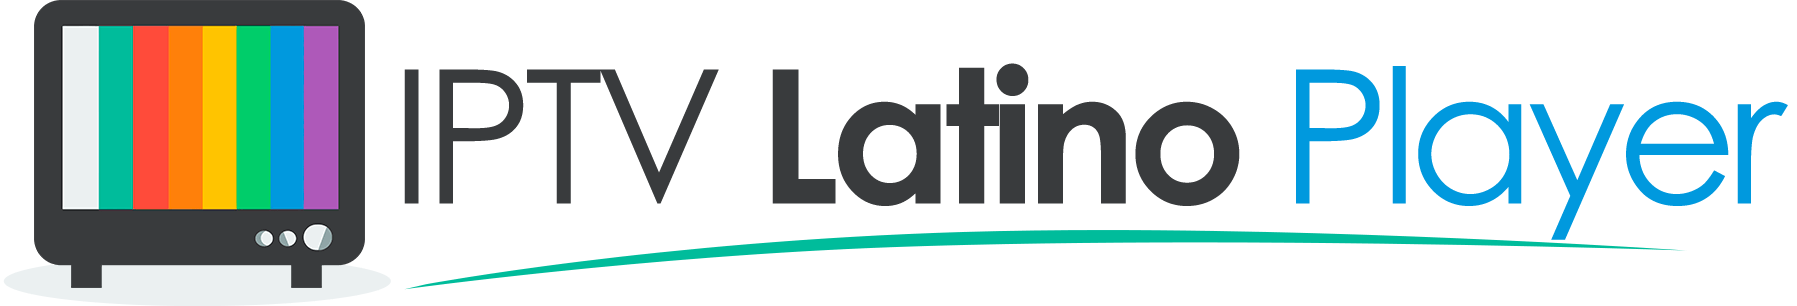 IPTV Player Latino – Ver Tv y películas en tu celular